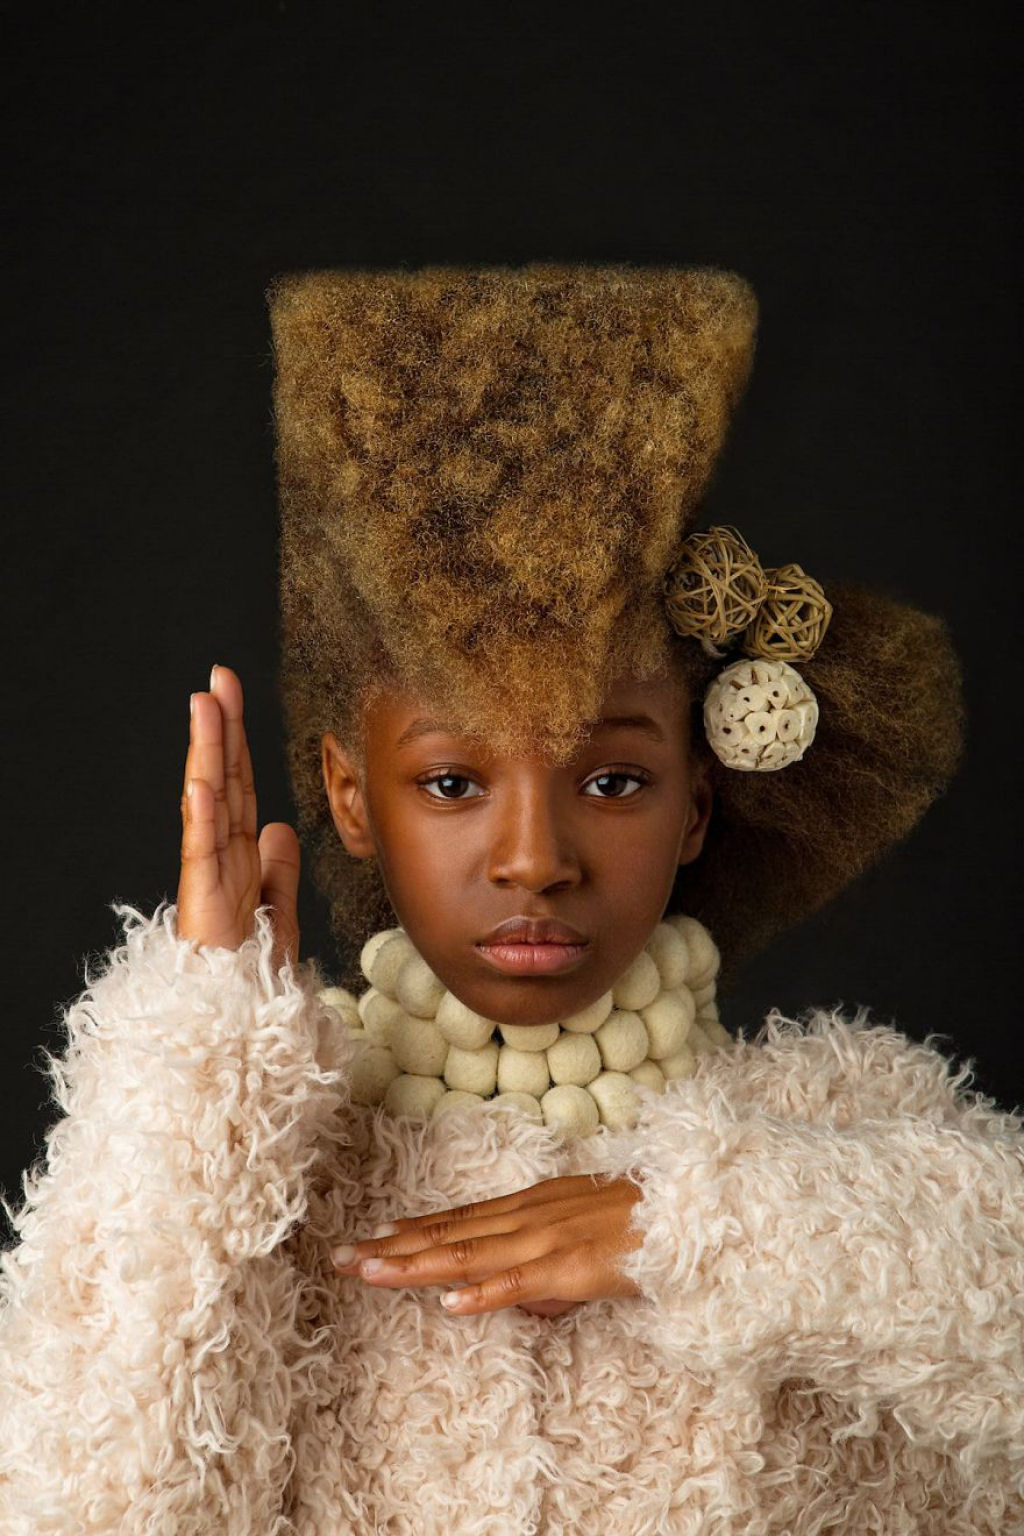 Retratos inspirados destacam a beleza do cabelo crespo para que outras garotas parem de escond-lo 09